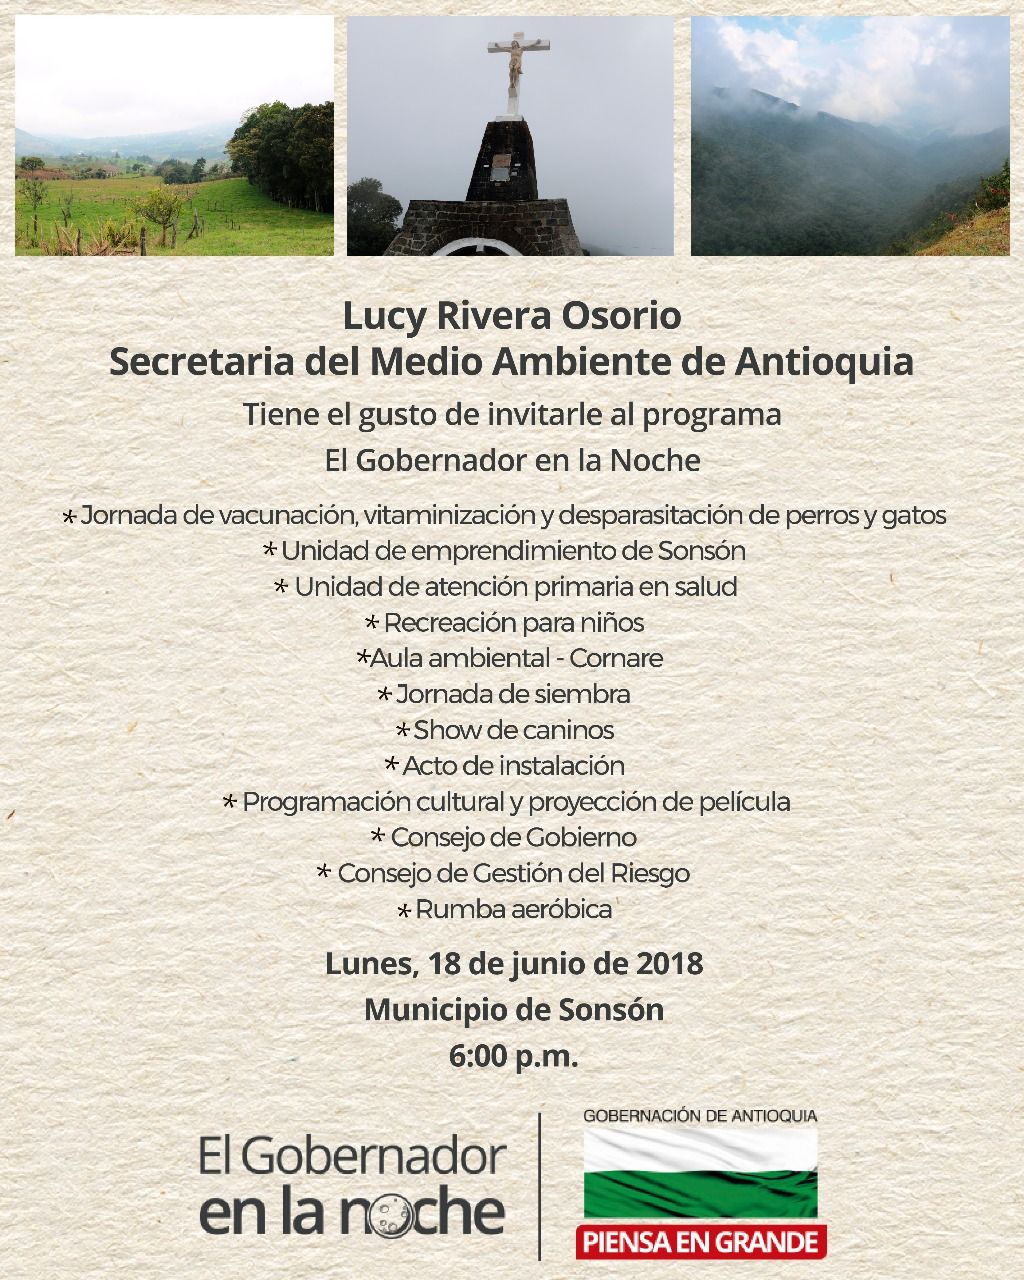 Secretaría del Medio Ambiente de Antioquia invita al programa Gobernador en la Noche